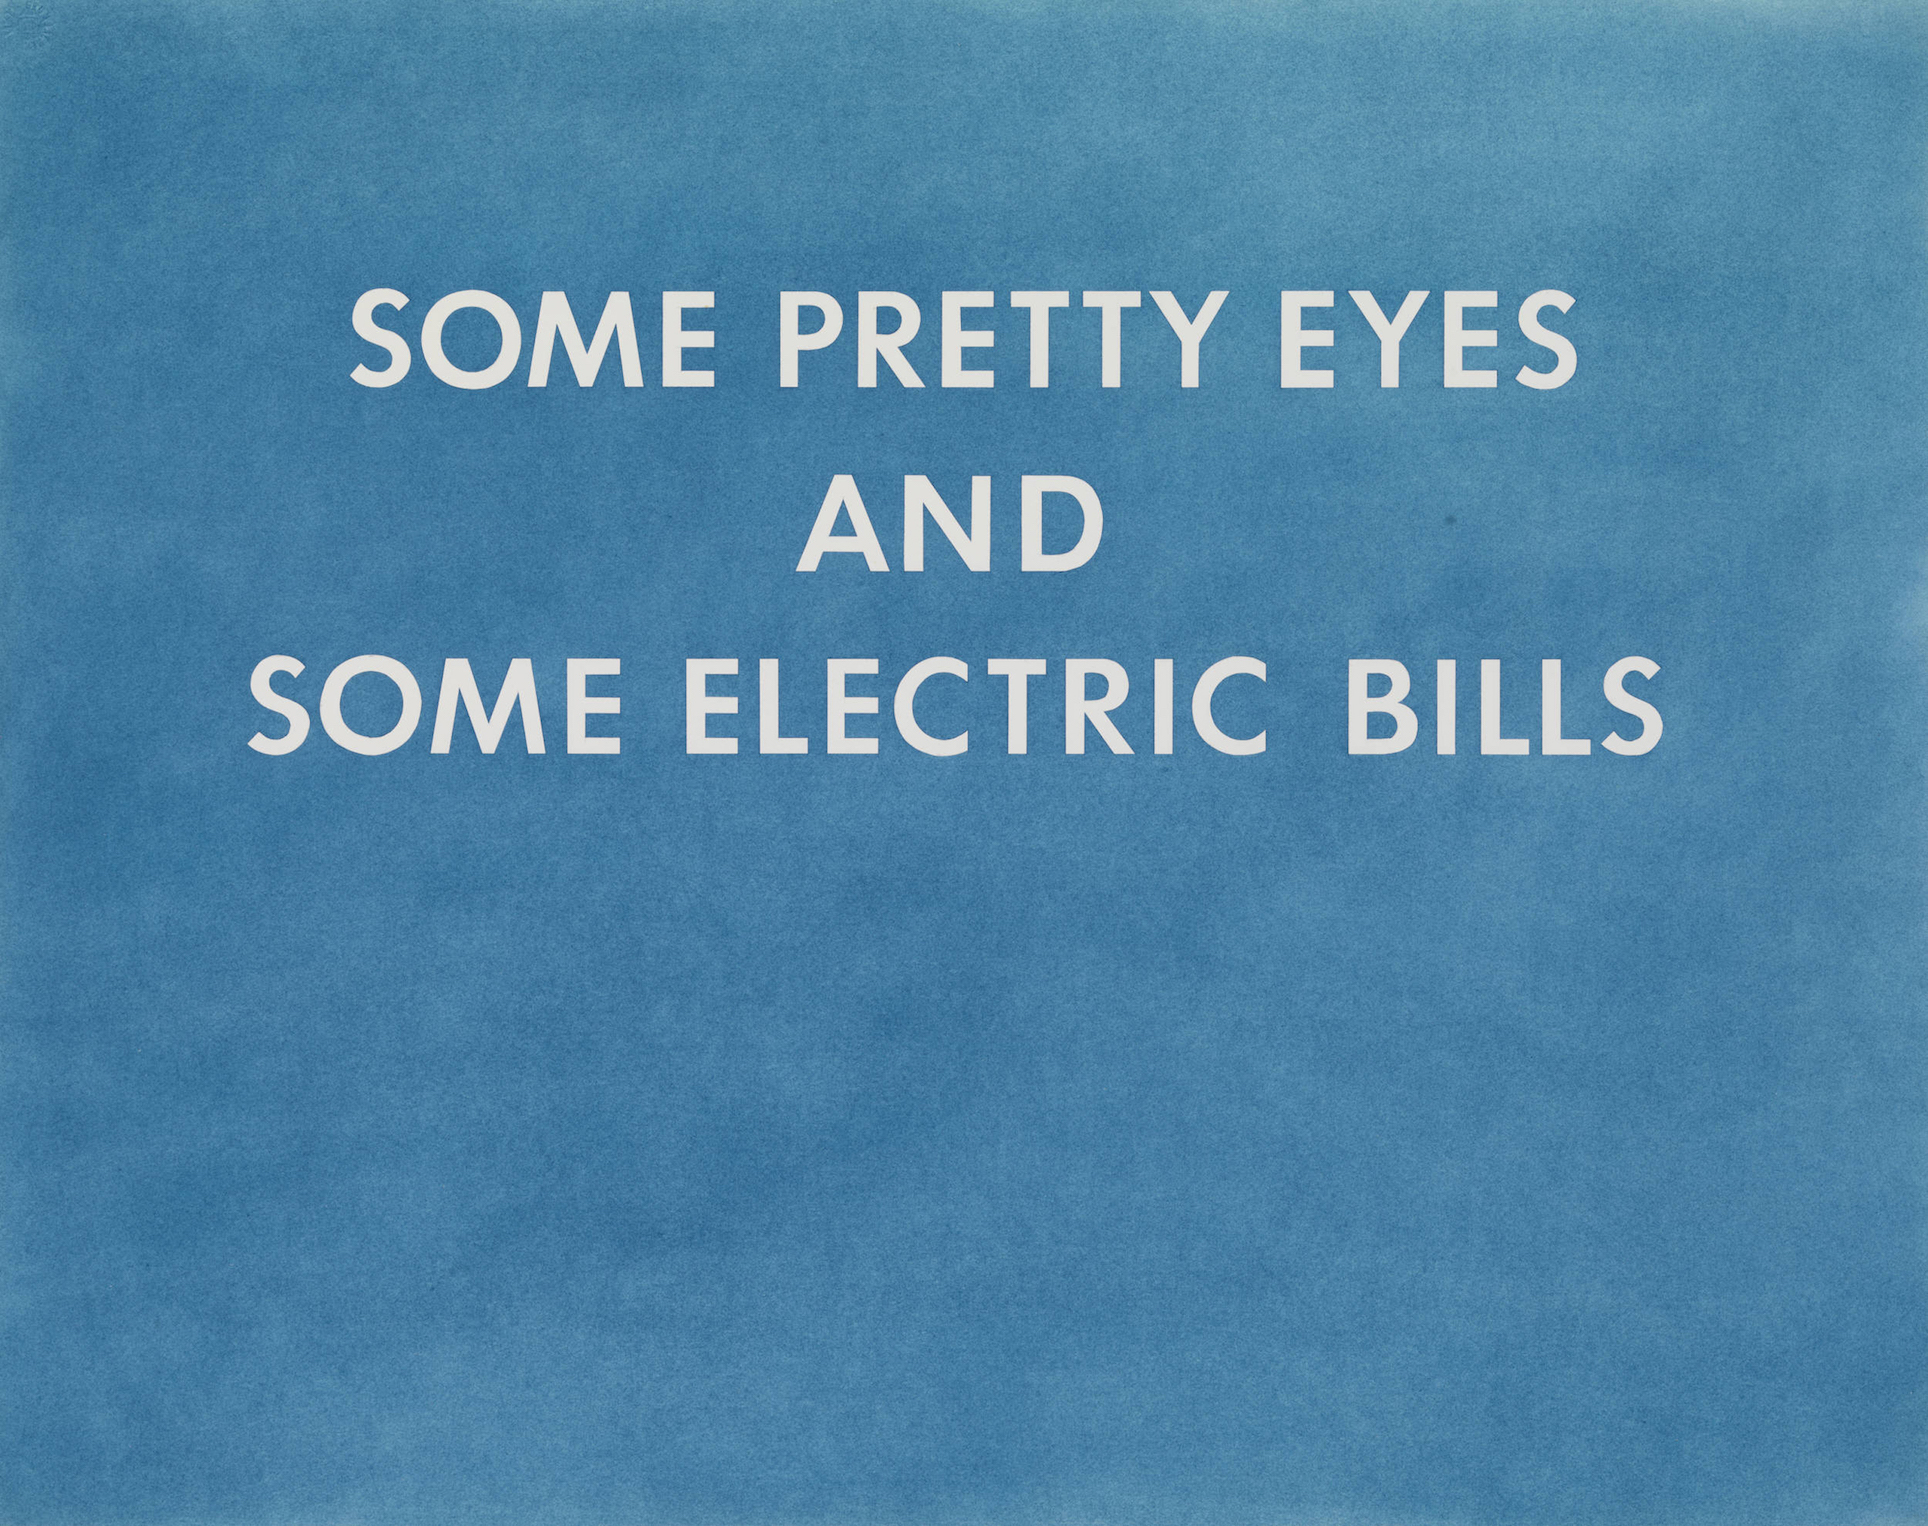 pretty eyes, electric bills, ed ruscha, 1976